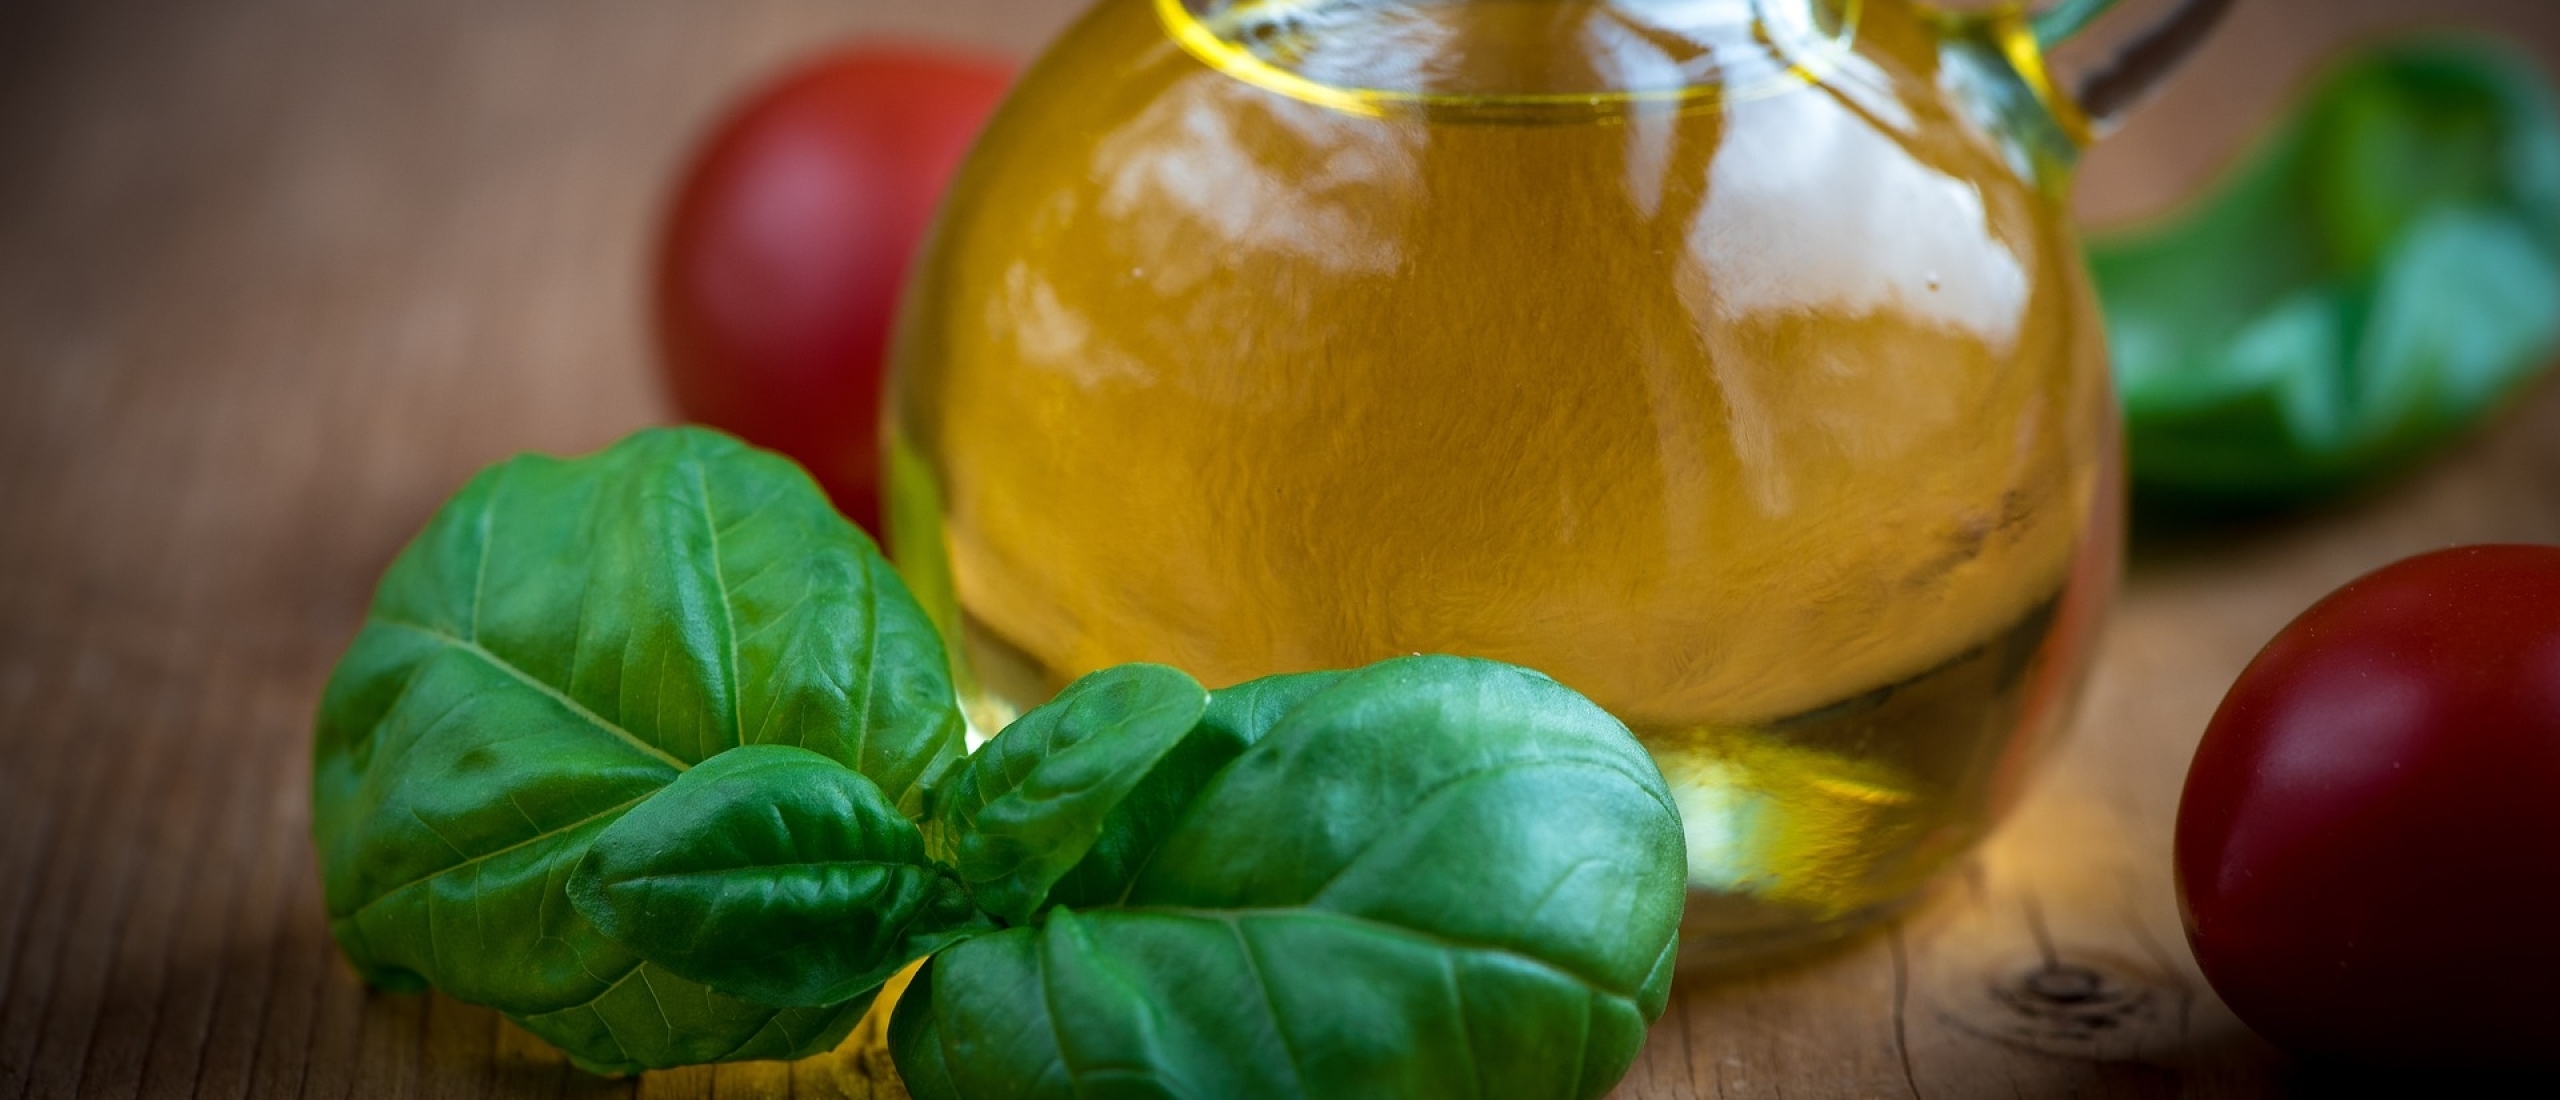 voordelen van het gebruik van olijfolie in je dagelijkse leven